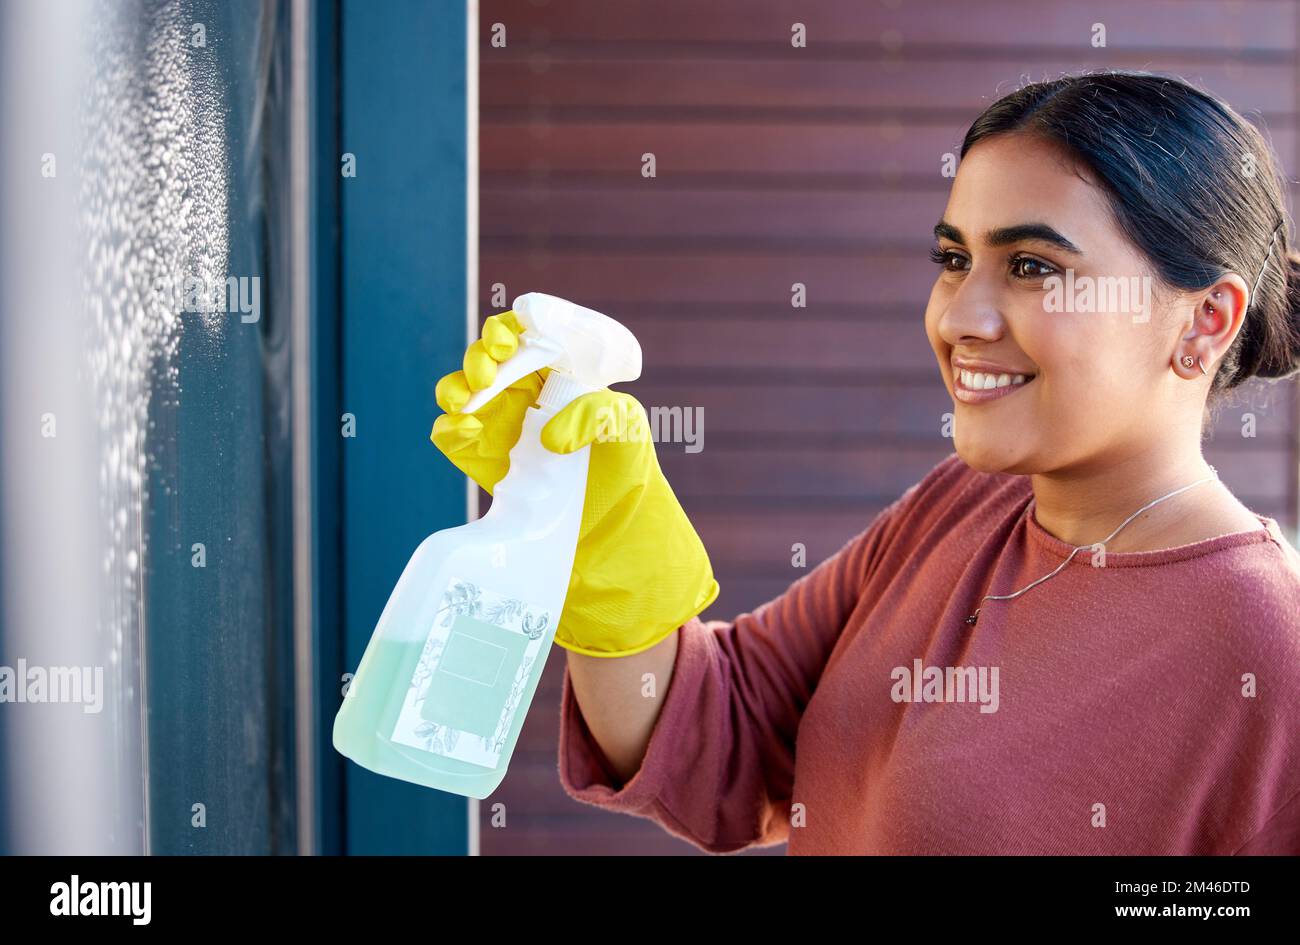 Femme, mains ou bouteille vaporisée dans le nettoyage de fenêtres dans l'hôtel, maison ou bâtiment de bureau dans l'entretien d'hygiène ou la sécurité d'entretien de bactéries. Nettoyant Banque D'Images